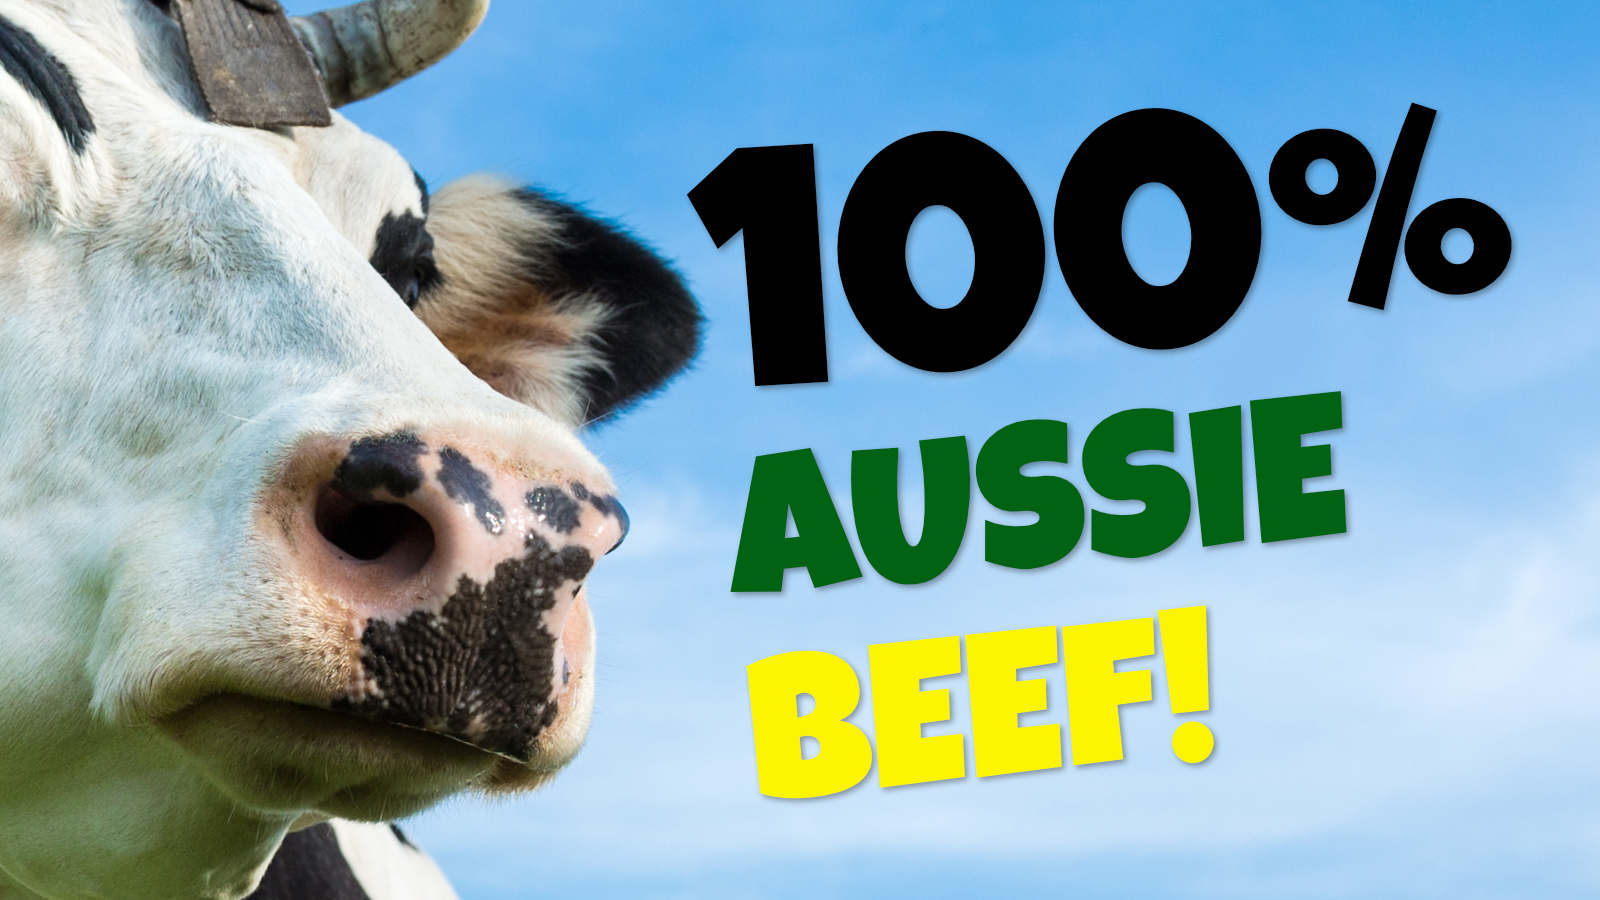 100% Aussie Beef!